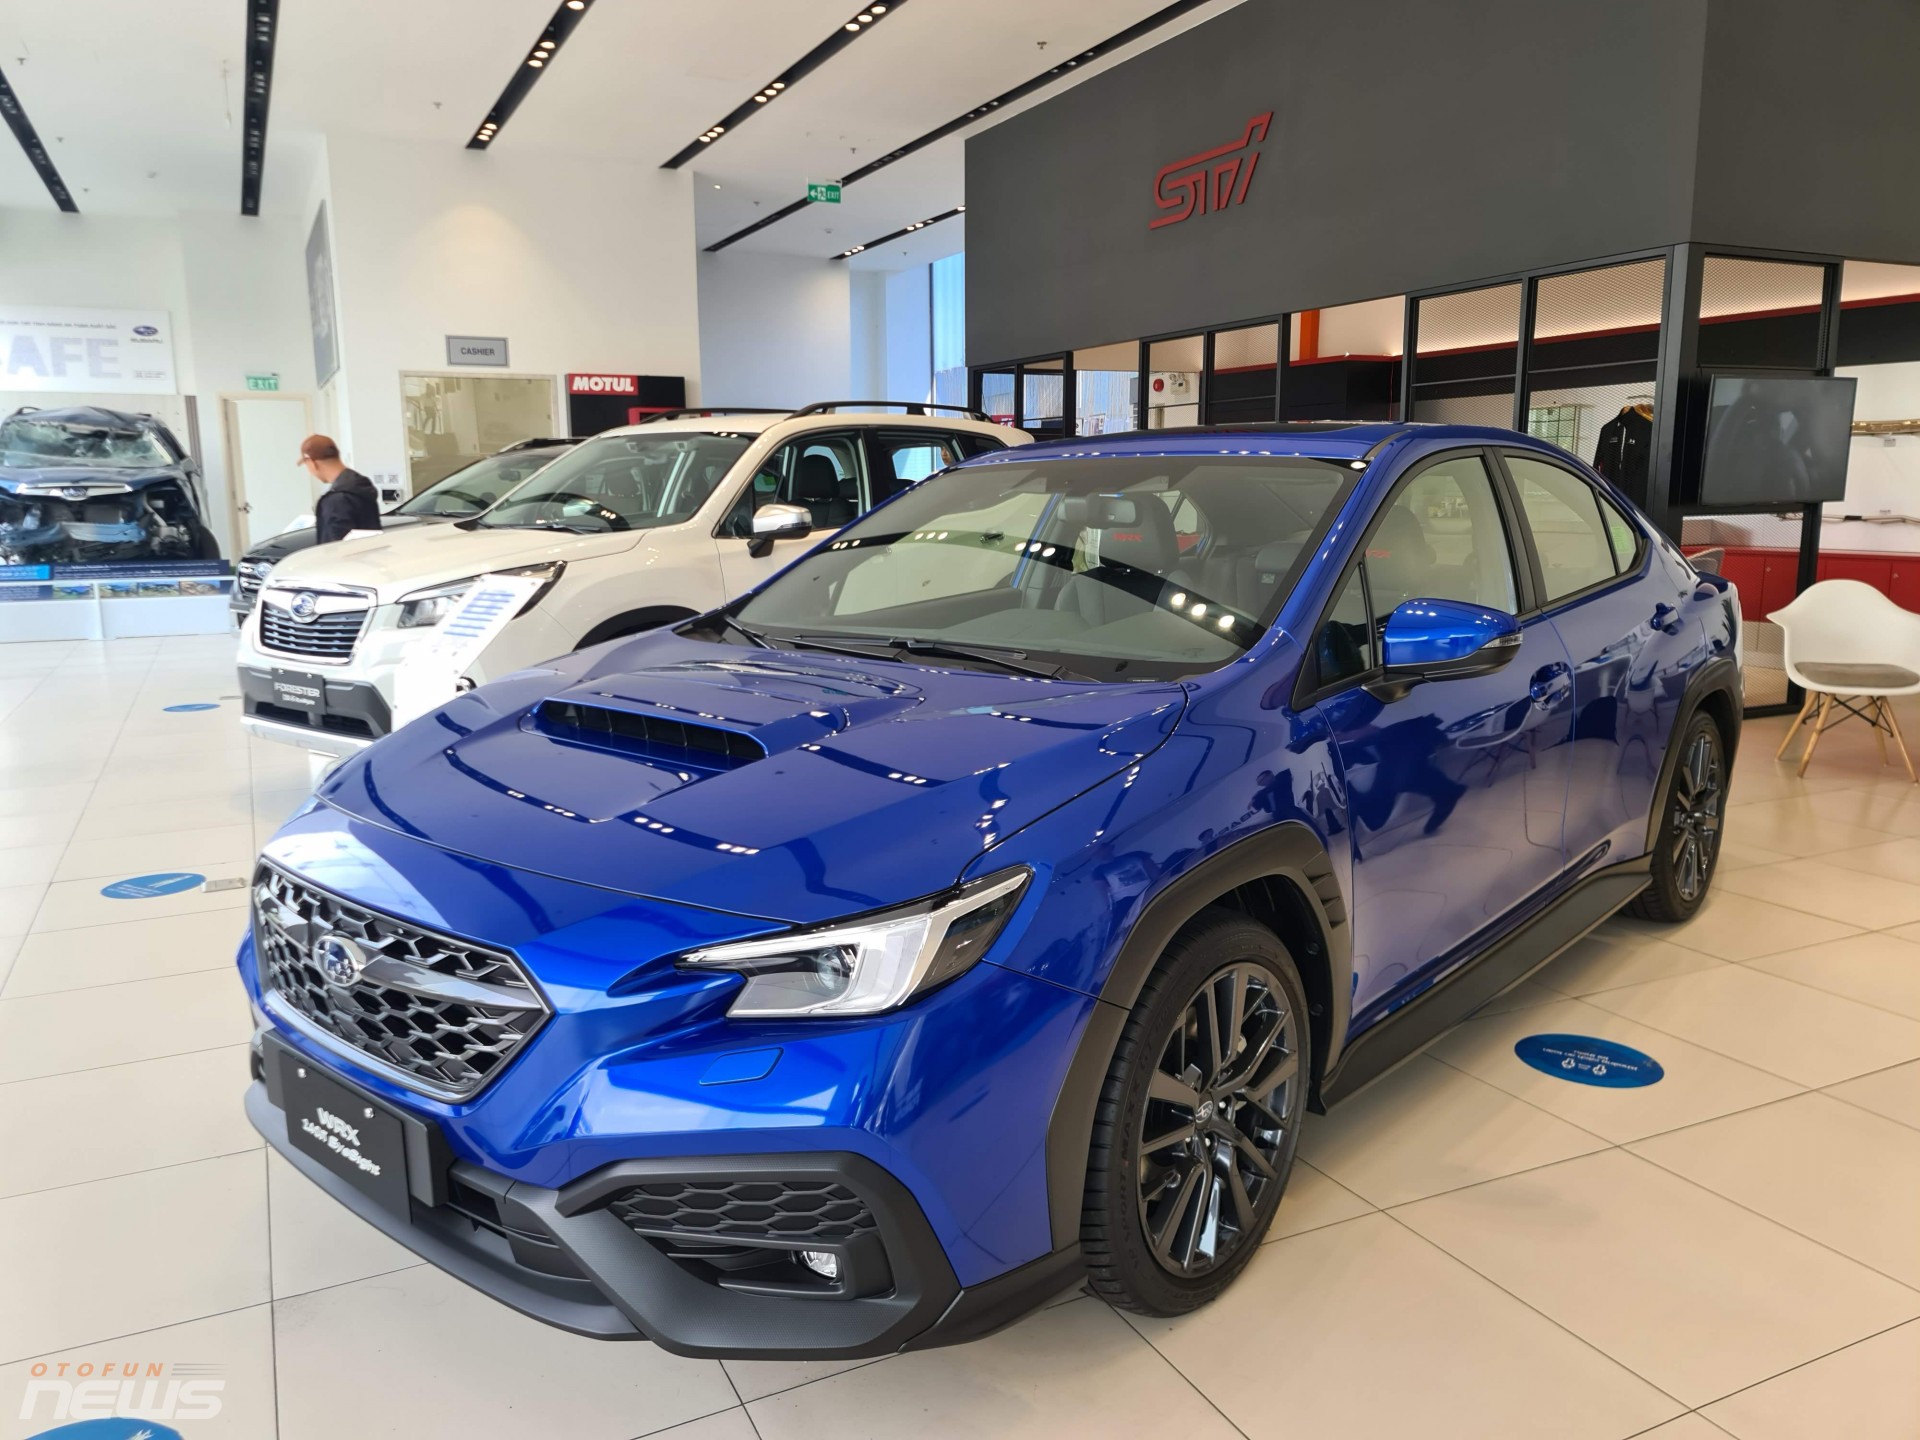 Vừa sang năm mới, Subaru đã tung ưu đãi lên tới hàng triệu đồng